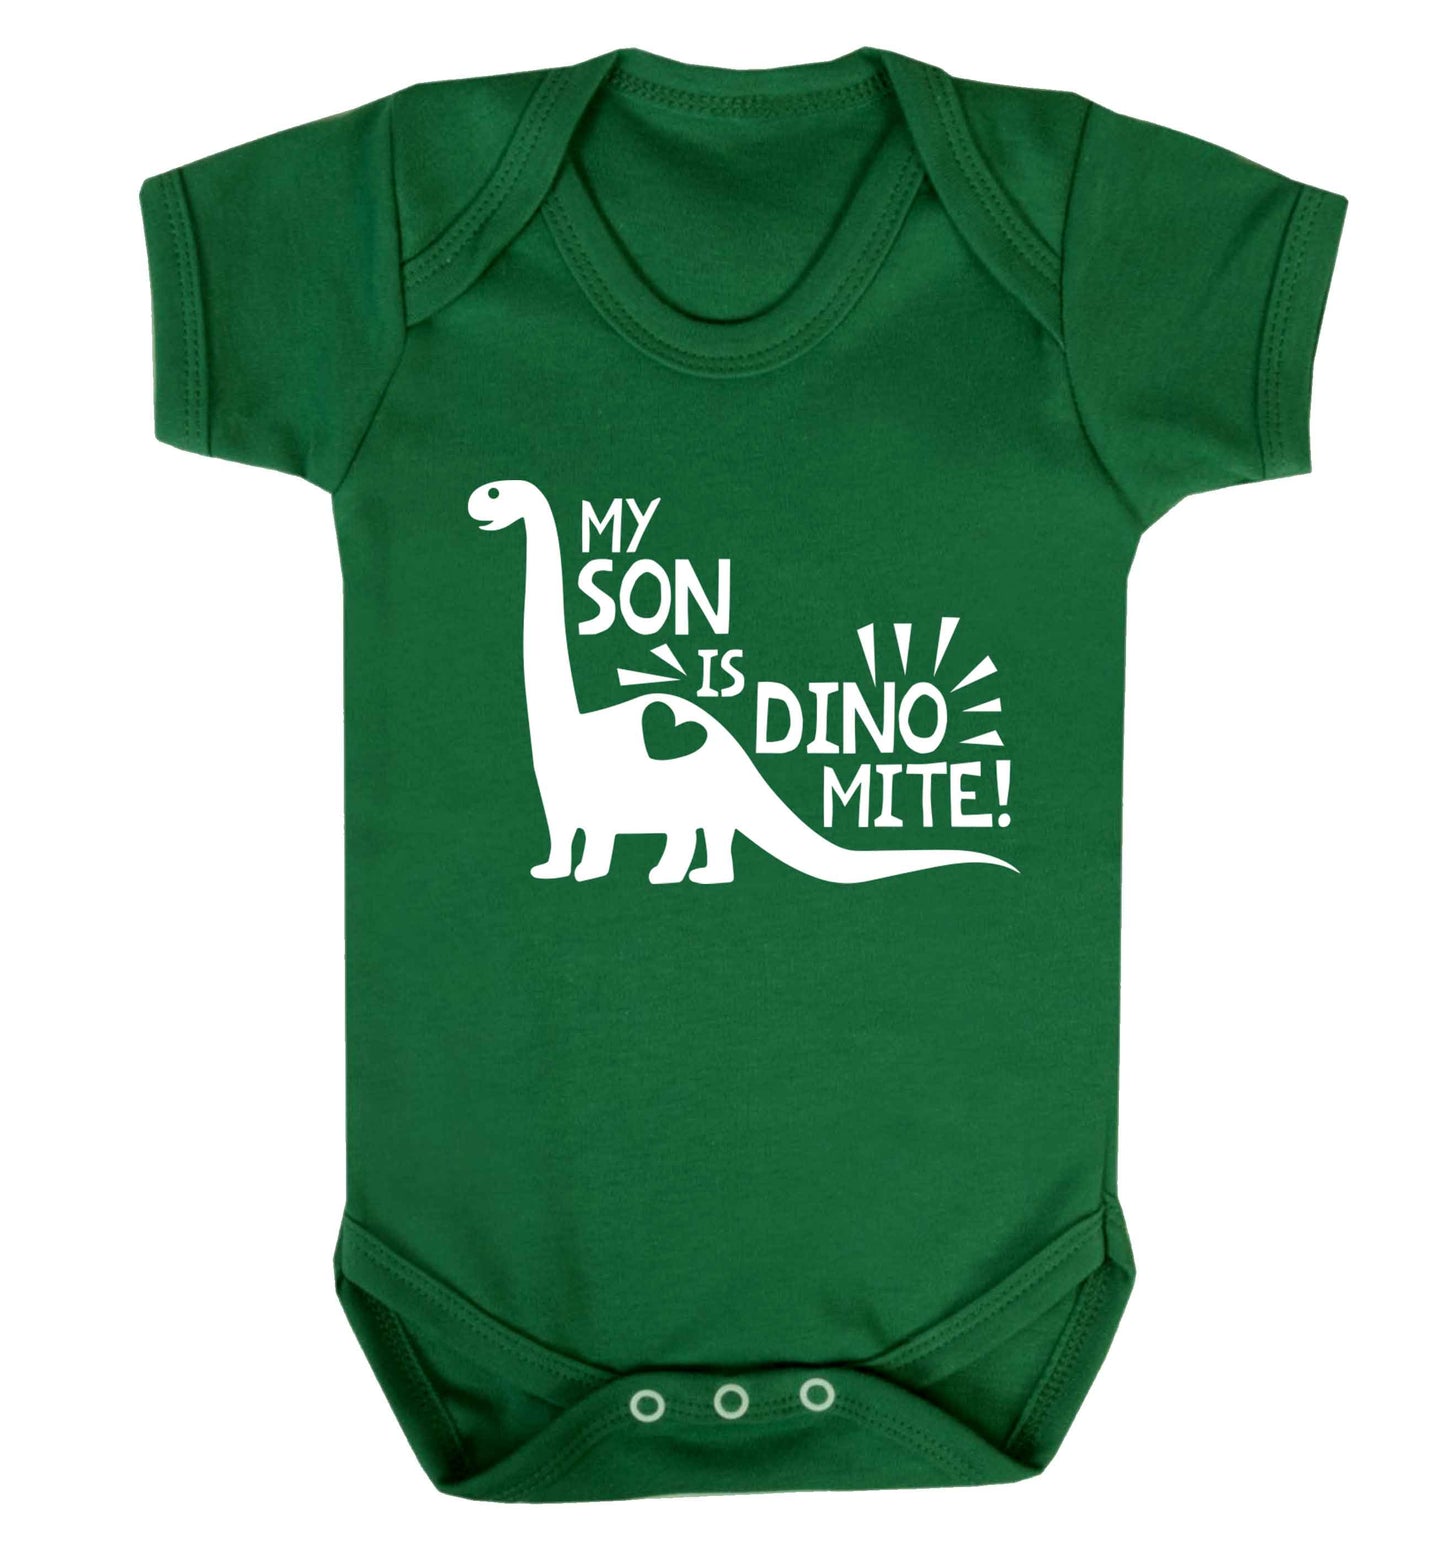 My son is dinomite! Baby Vest green 18-24 months